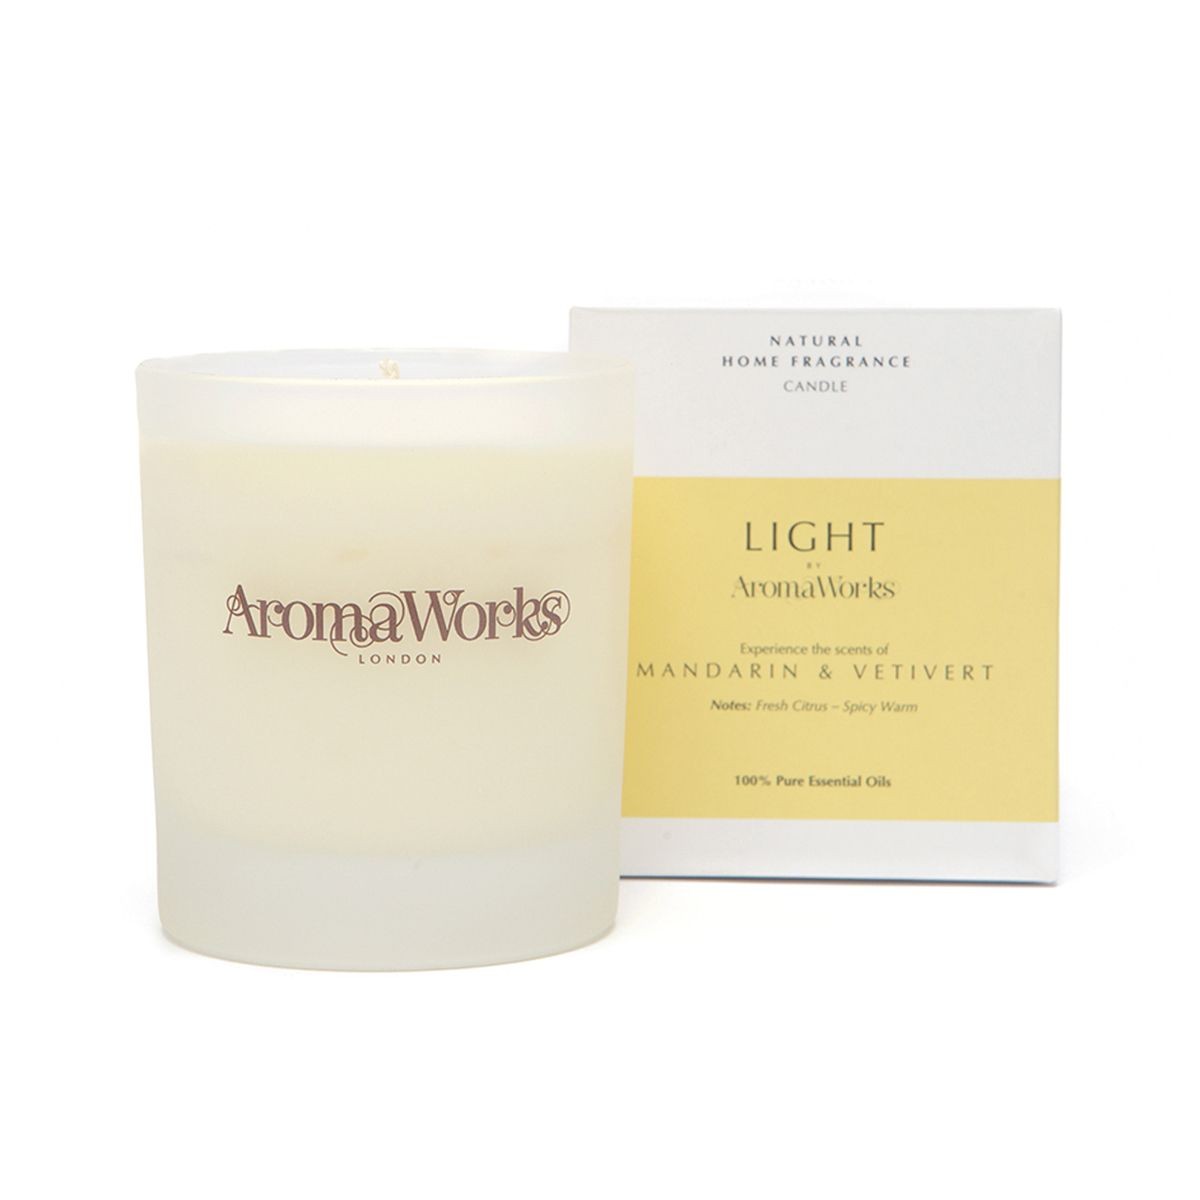 Aromaworks Light Range Mandarin & Vetivert Candle 30cl 